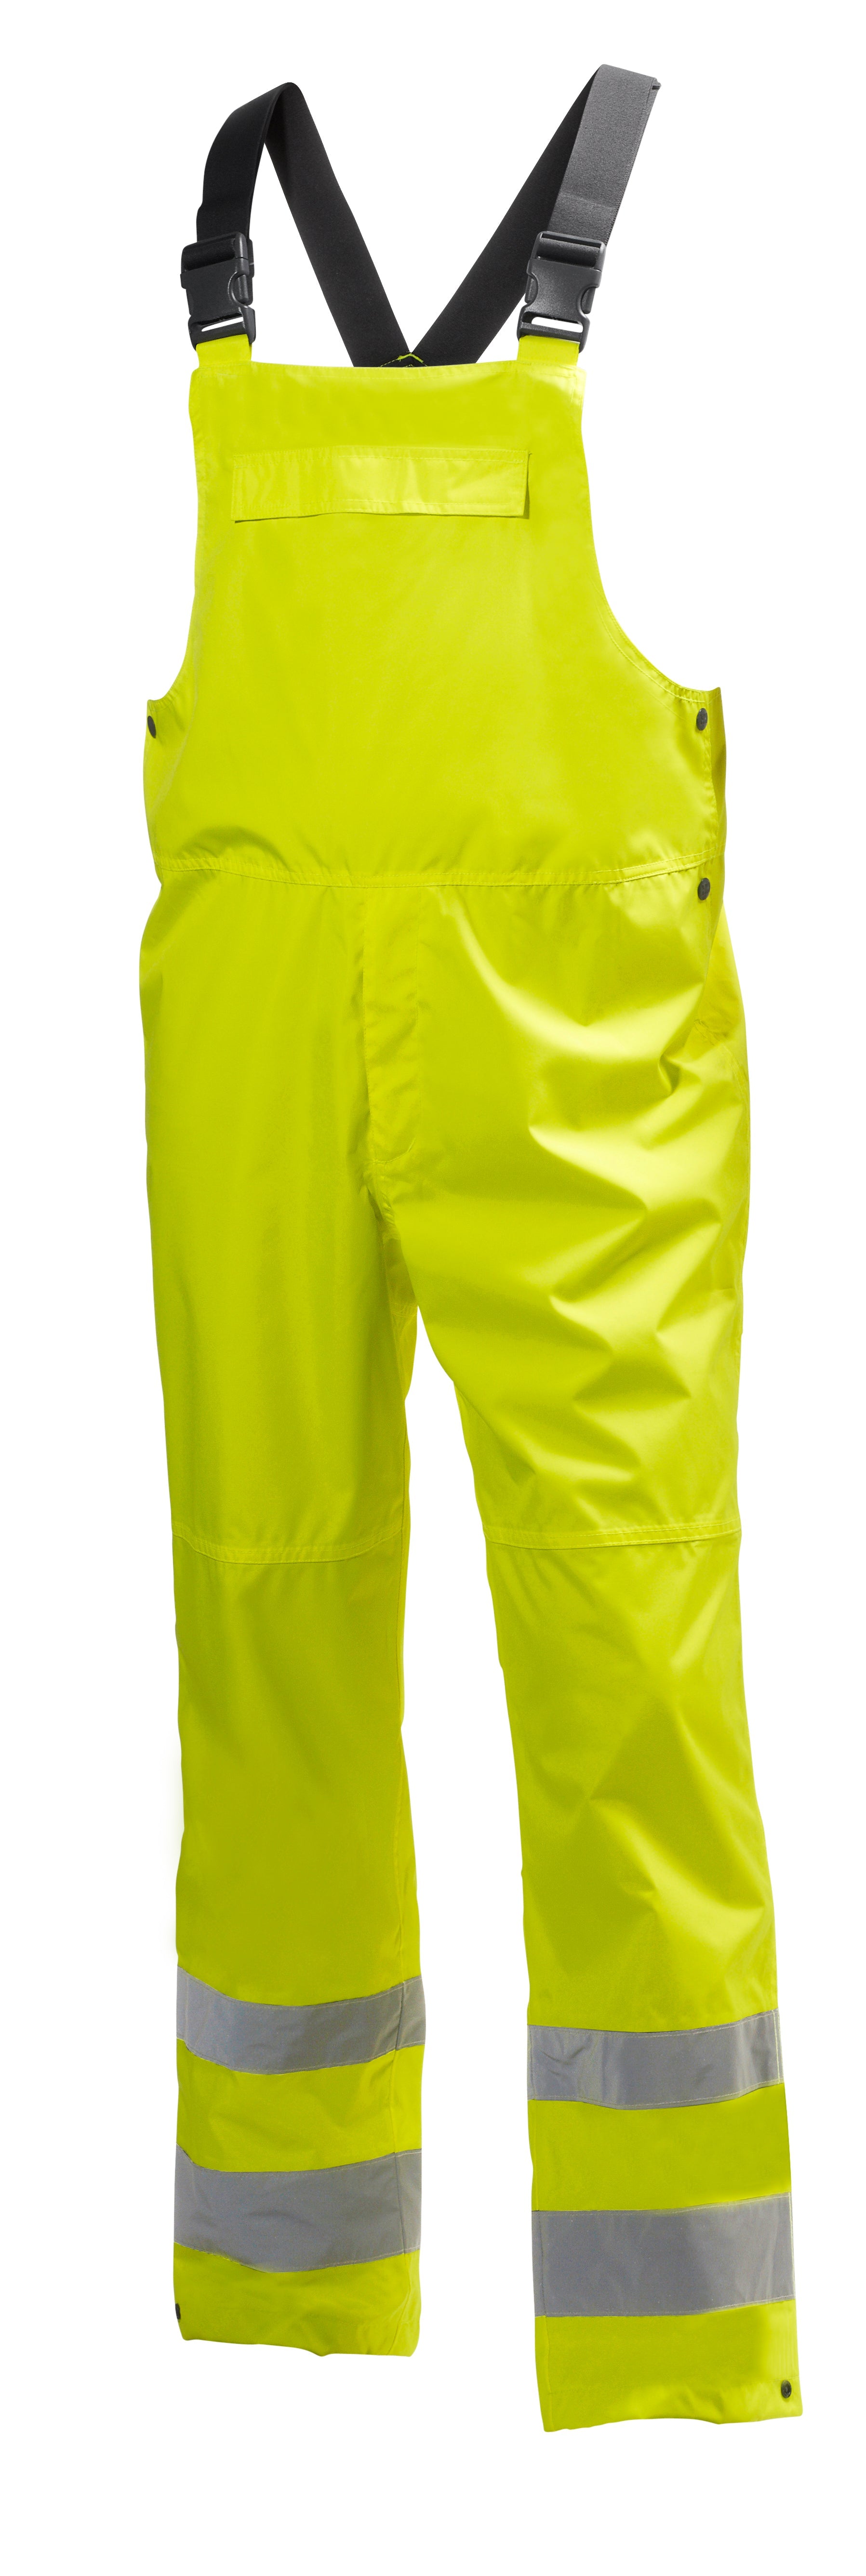 Helly Hansen Men's Alta Shelter Bib Pant - Work World - Workwear, Work Boots, Safety Gear